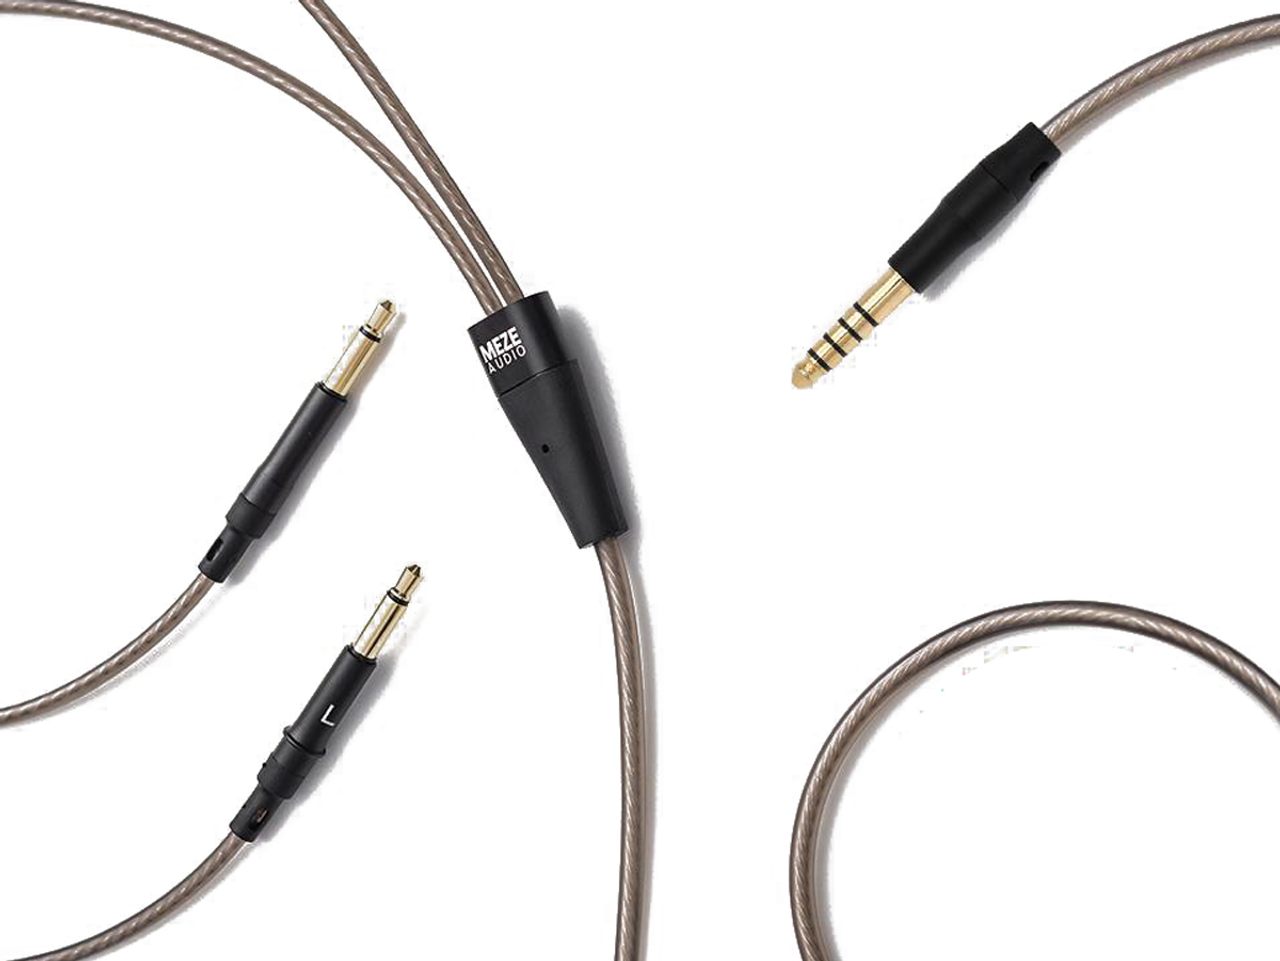 4.4MM Balanced Cable for Meze 99 Classics headphones